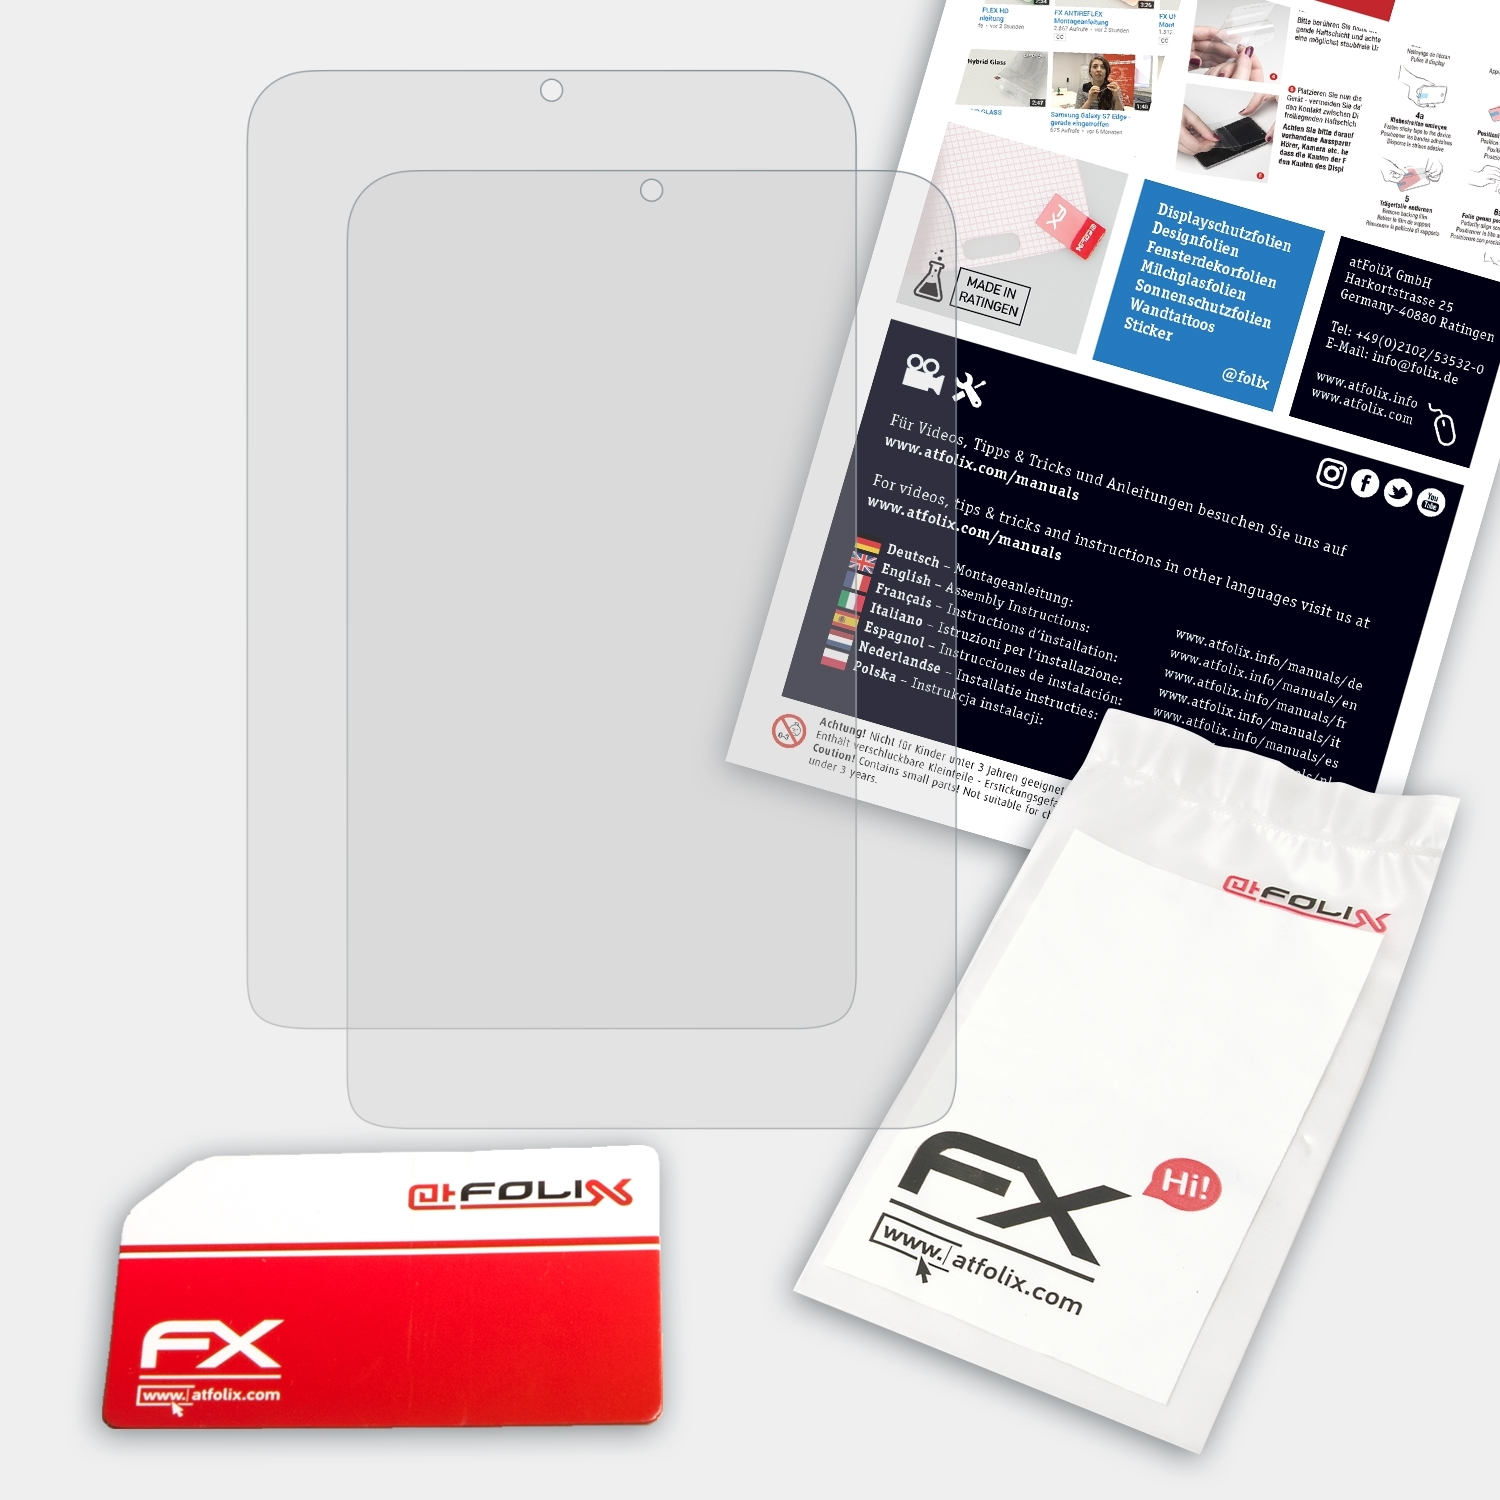 FX-Antireflex 2x Displayschutz(für W3-810) Acer Iconia ATFOLIX